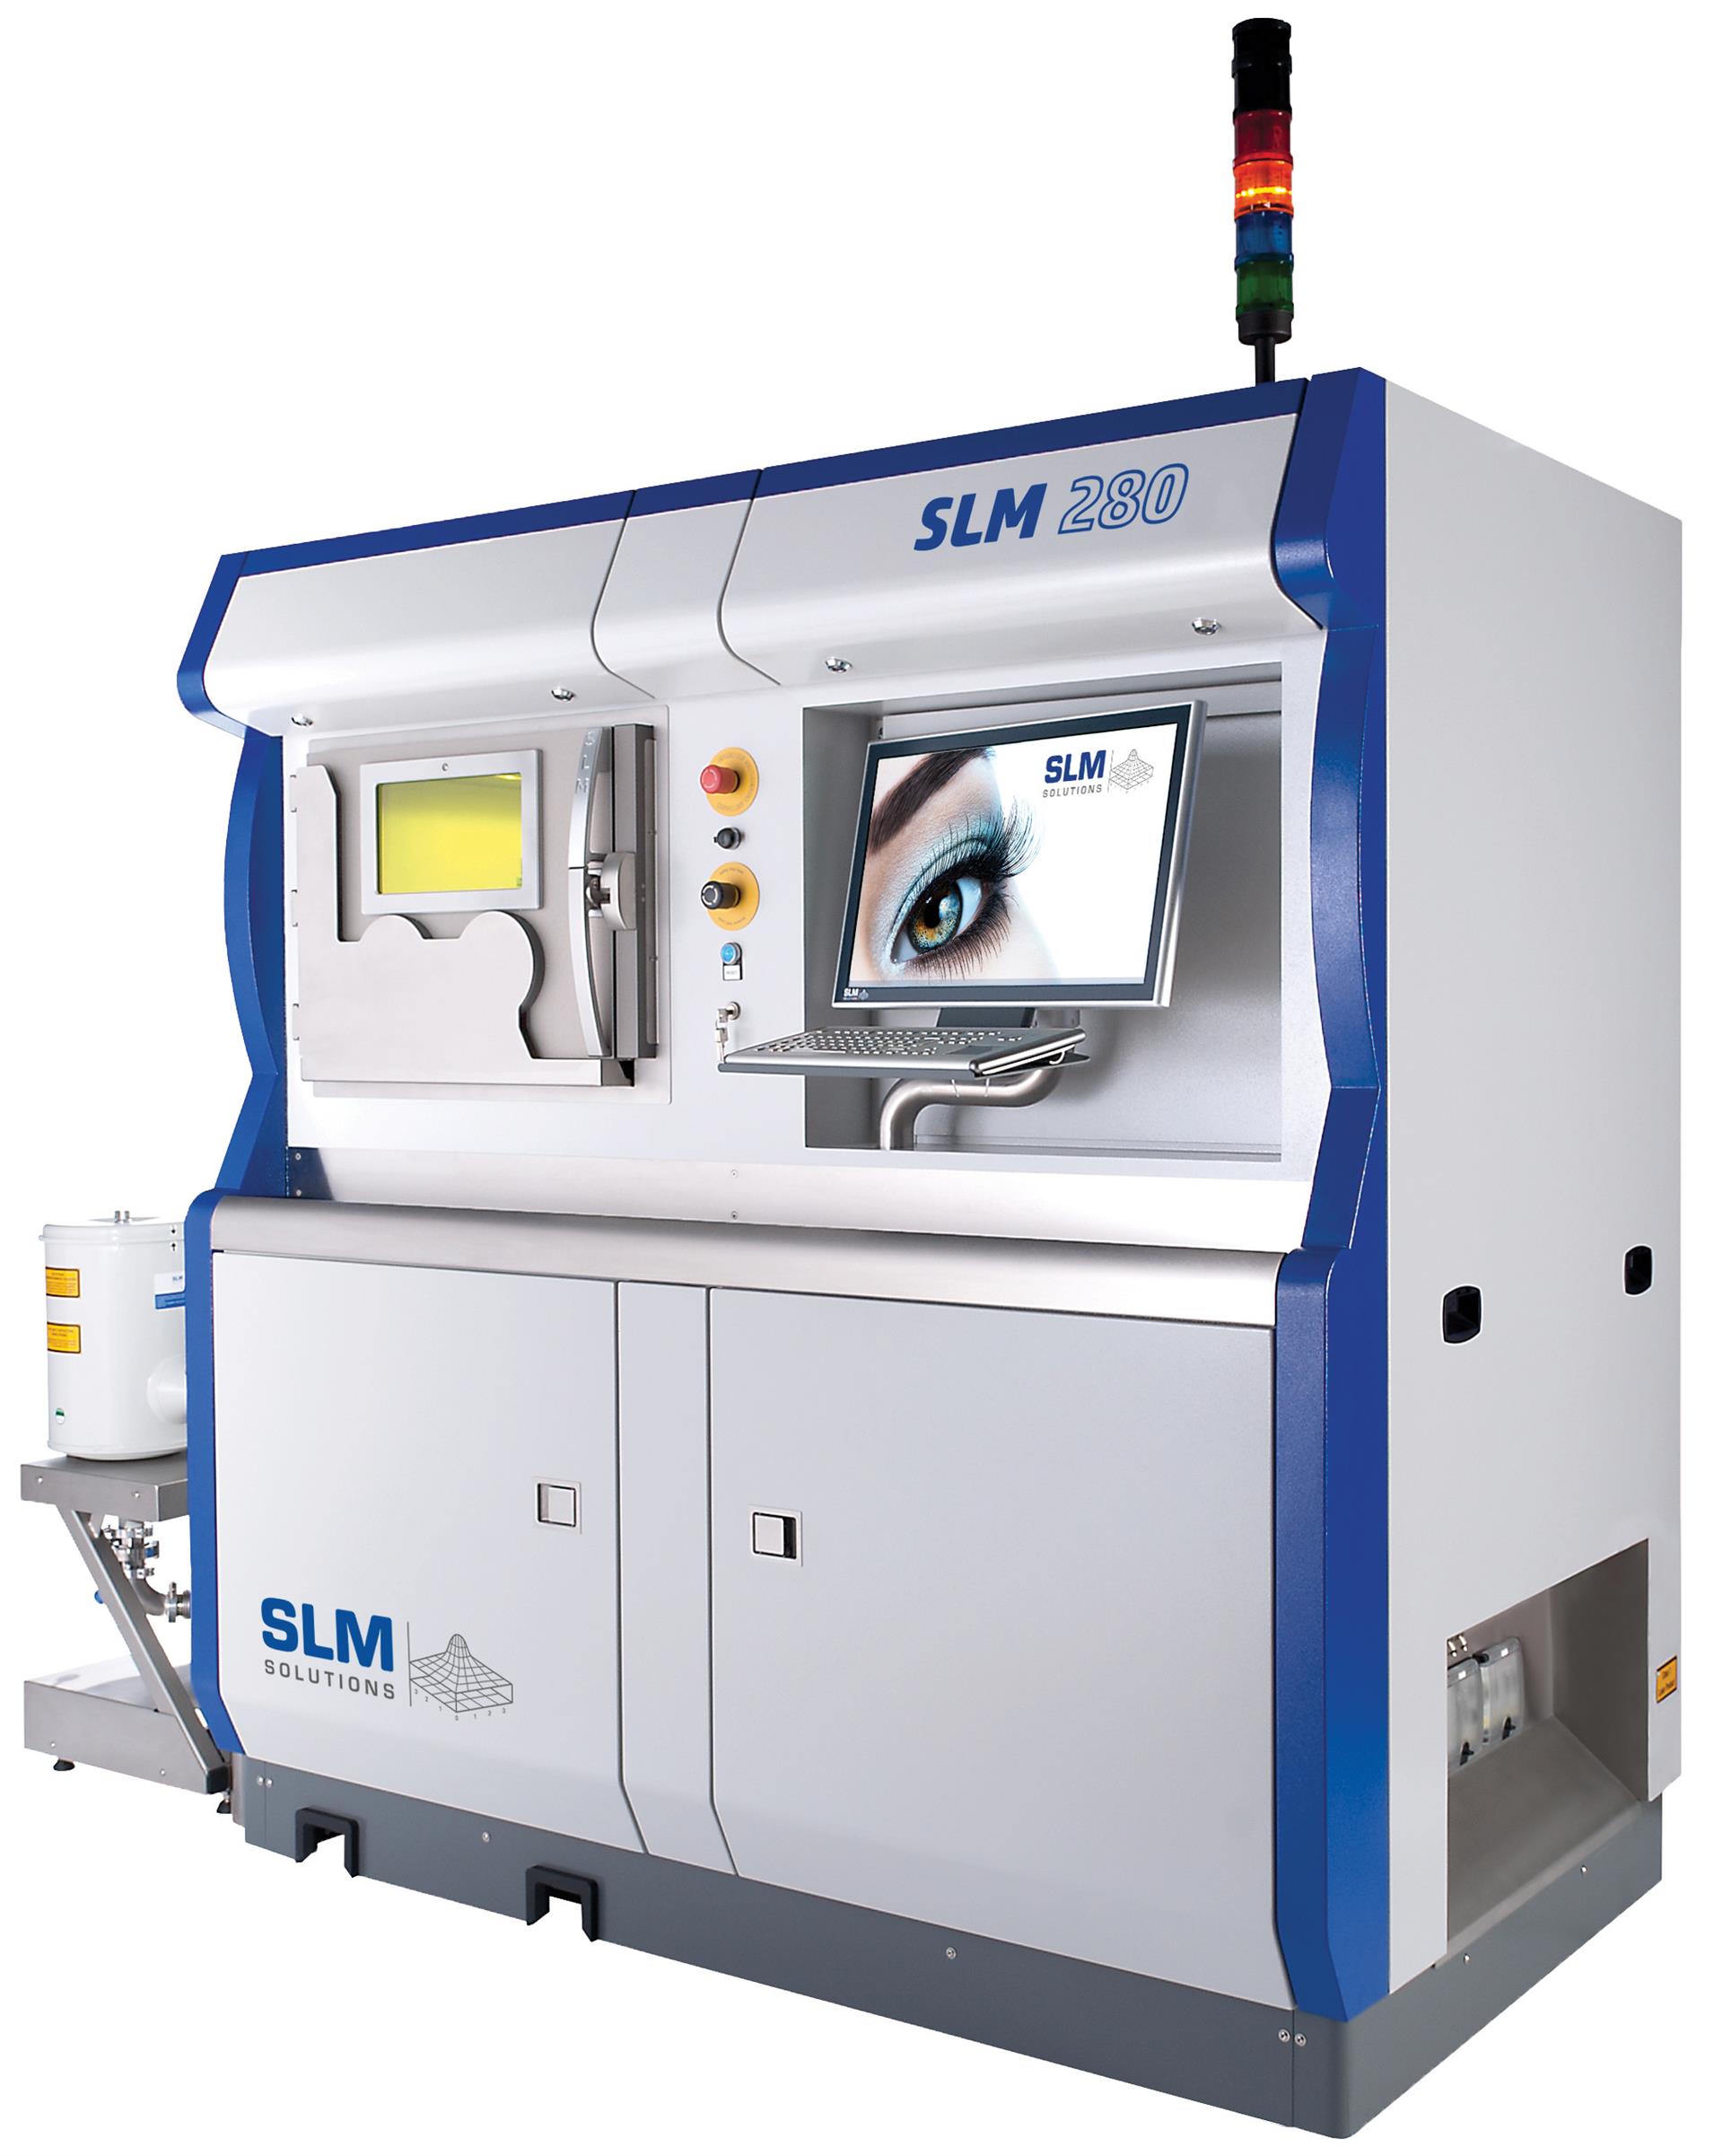 新航创梦 供应 slm280 3d金属打印机